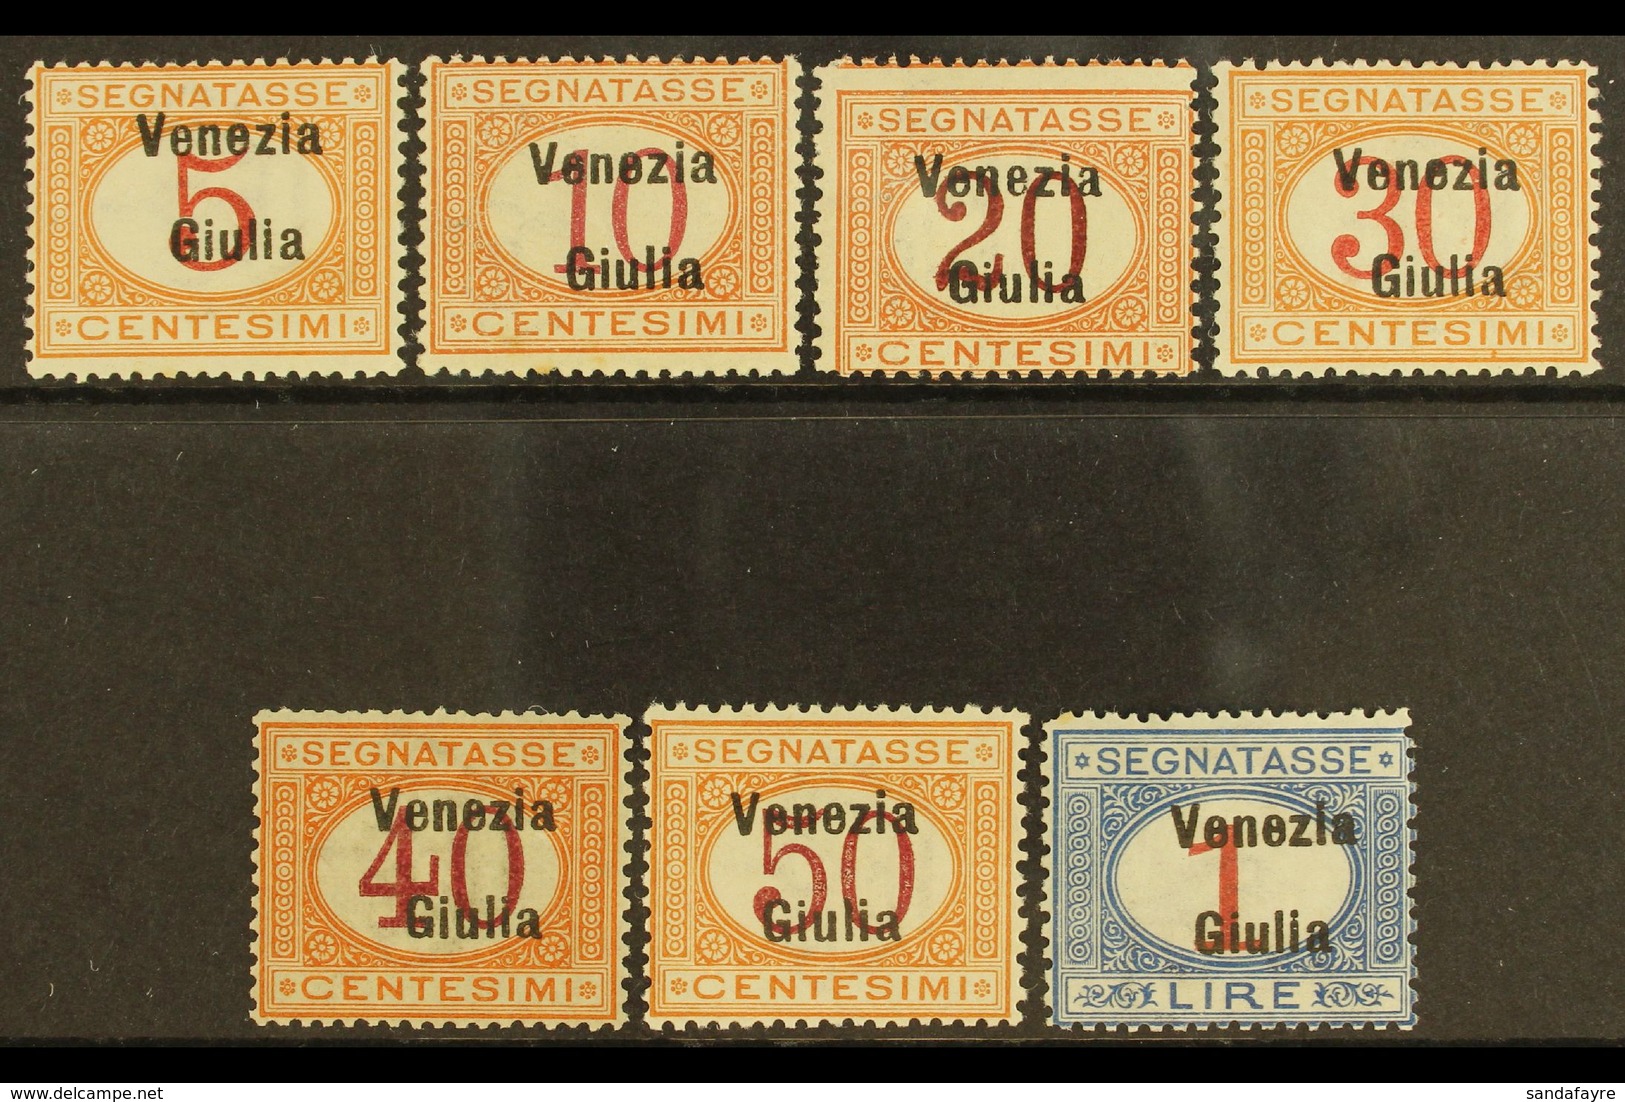 VENEZIA GIULIA  POSTAGE DUES 1918 Overprint Set Complete, Sass S4, Very Fine Mint. Cat €1000 (£760) Rare Set. (7 Stamps) - Non Classés